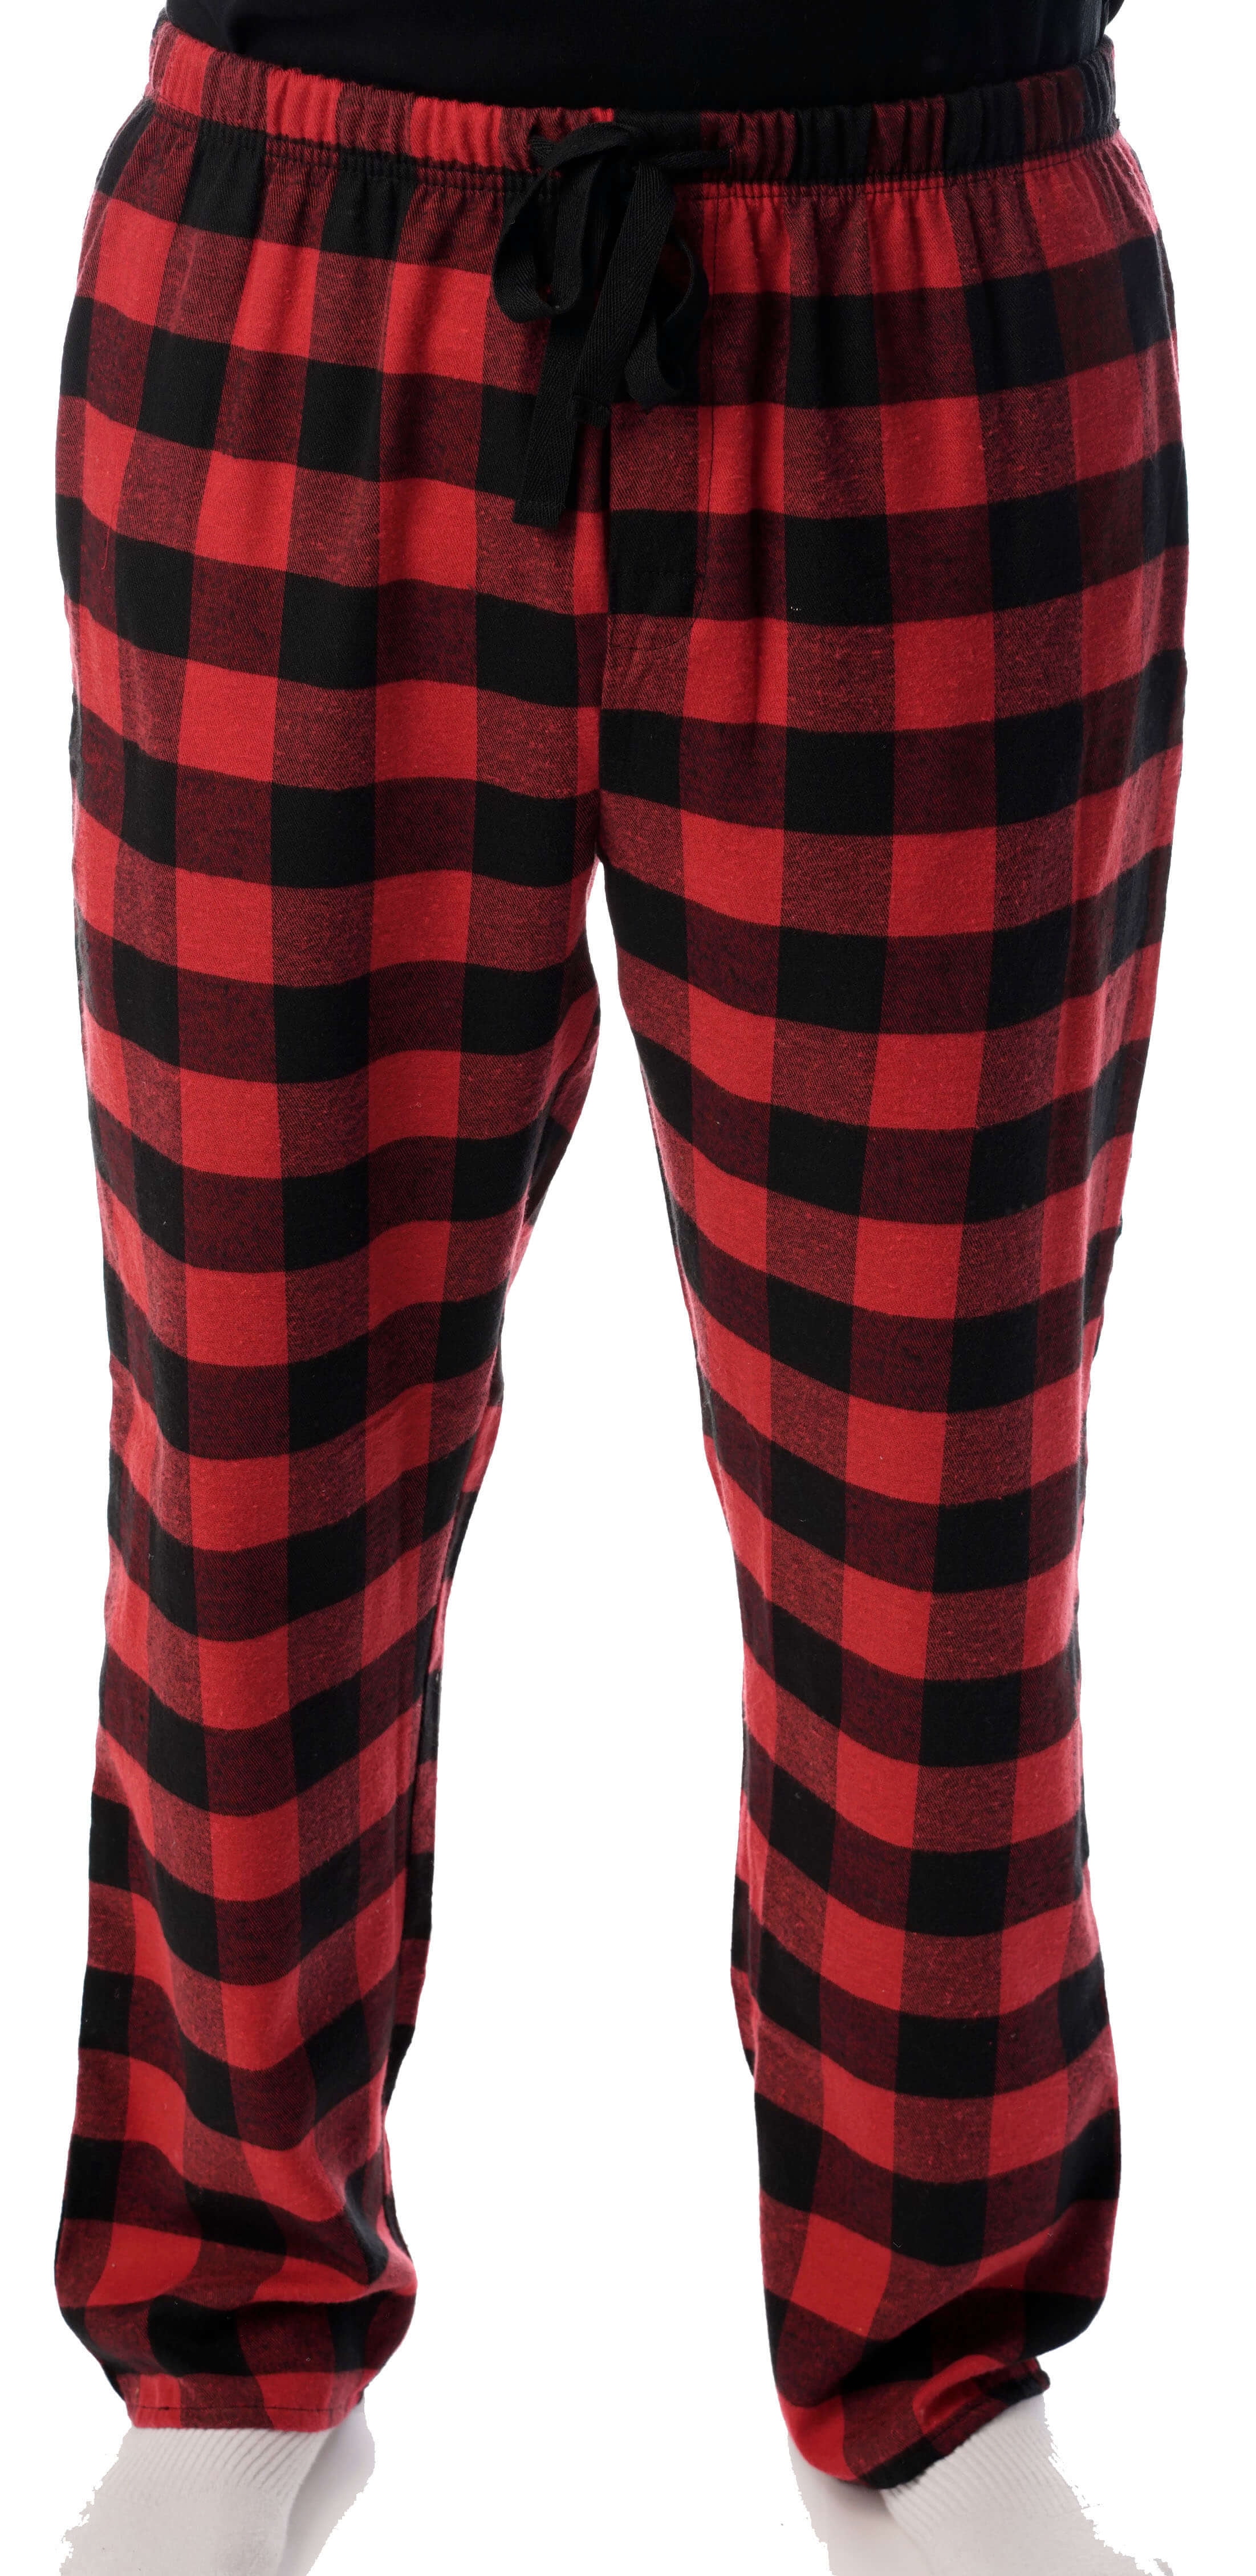 Flannel Pajamas - Plaid Pajama Pants 